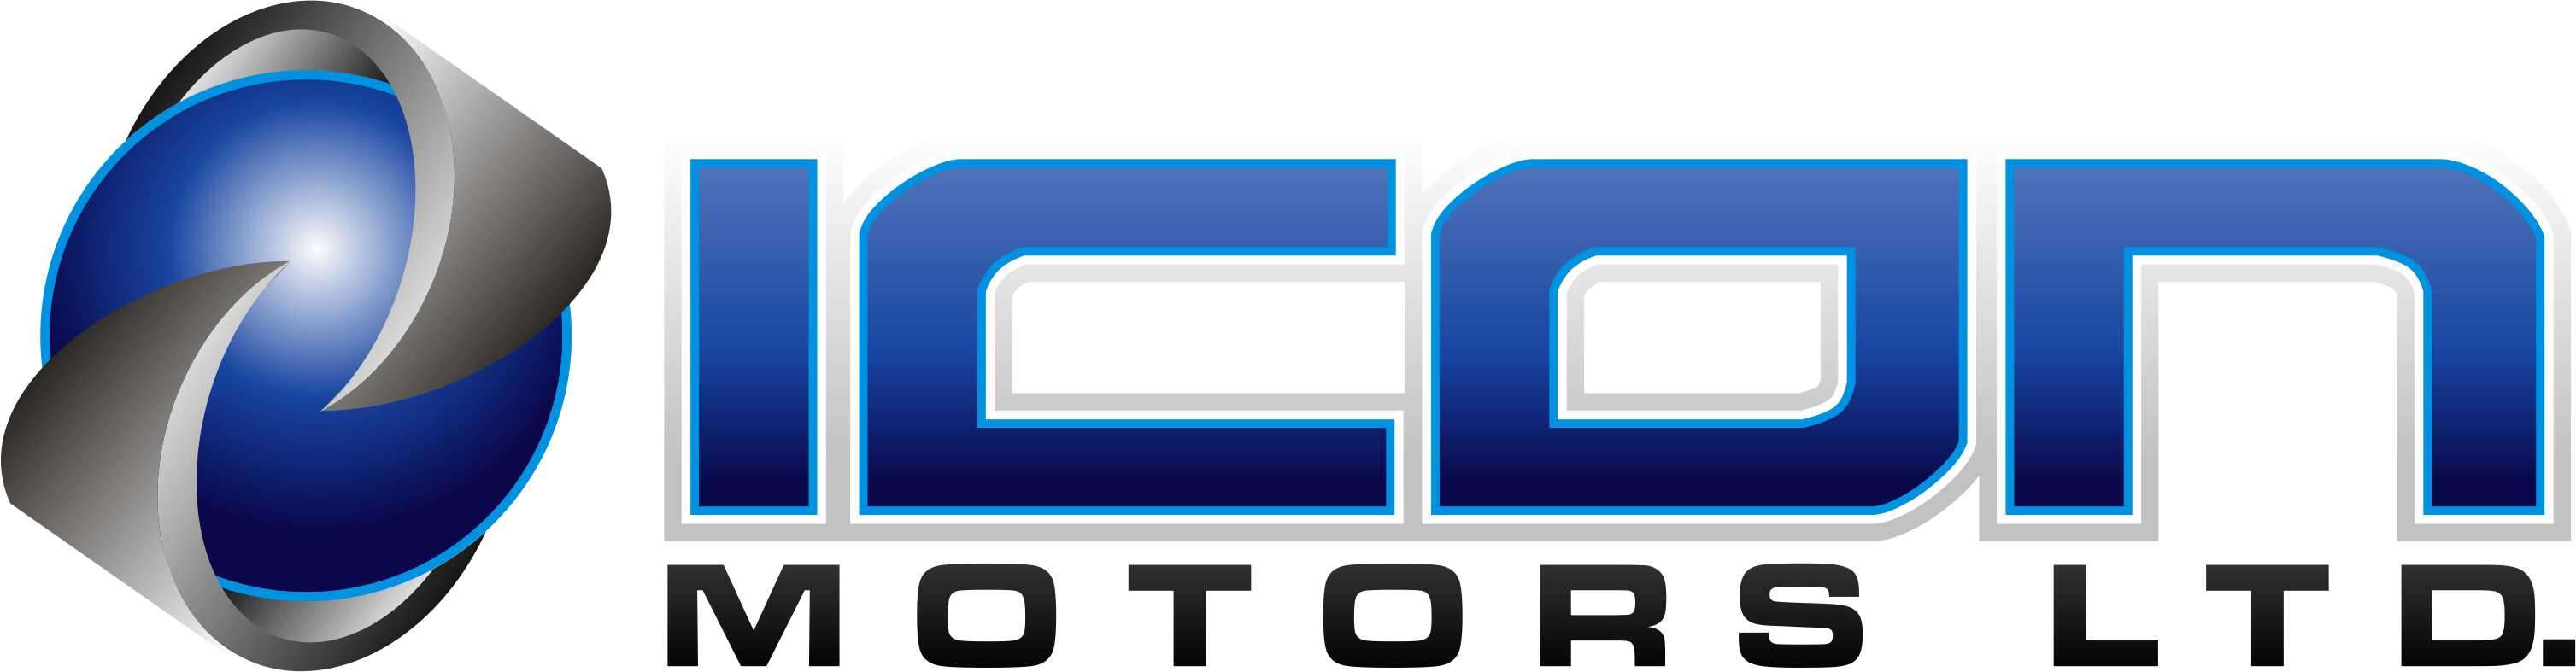 icon_motors_logo.jpg